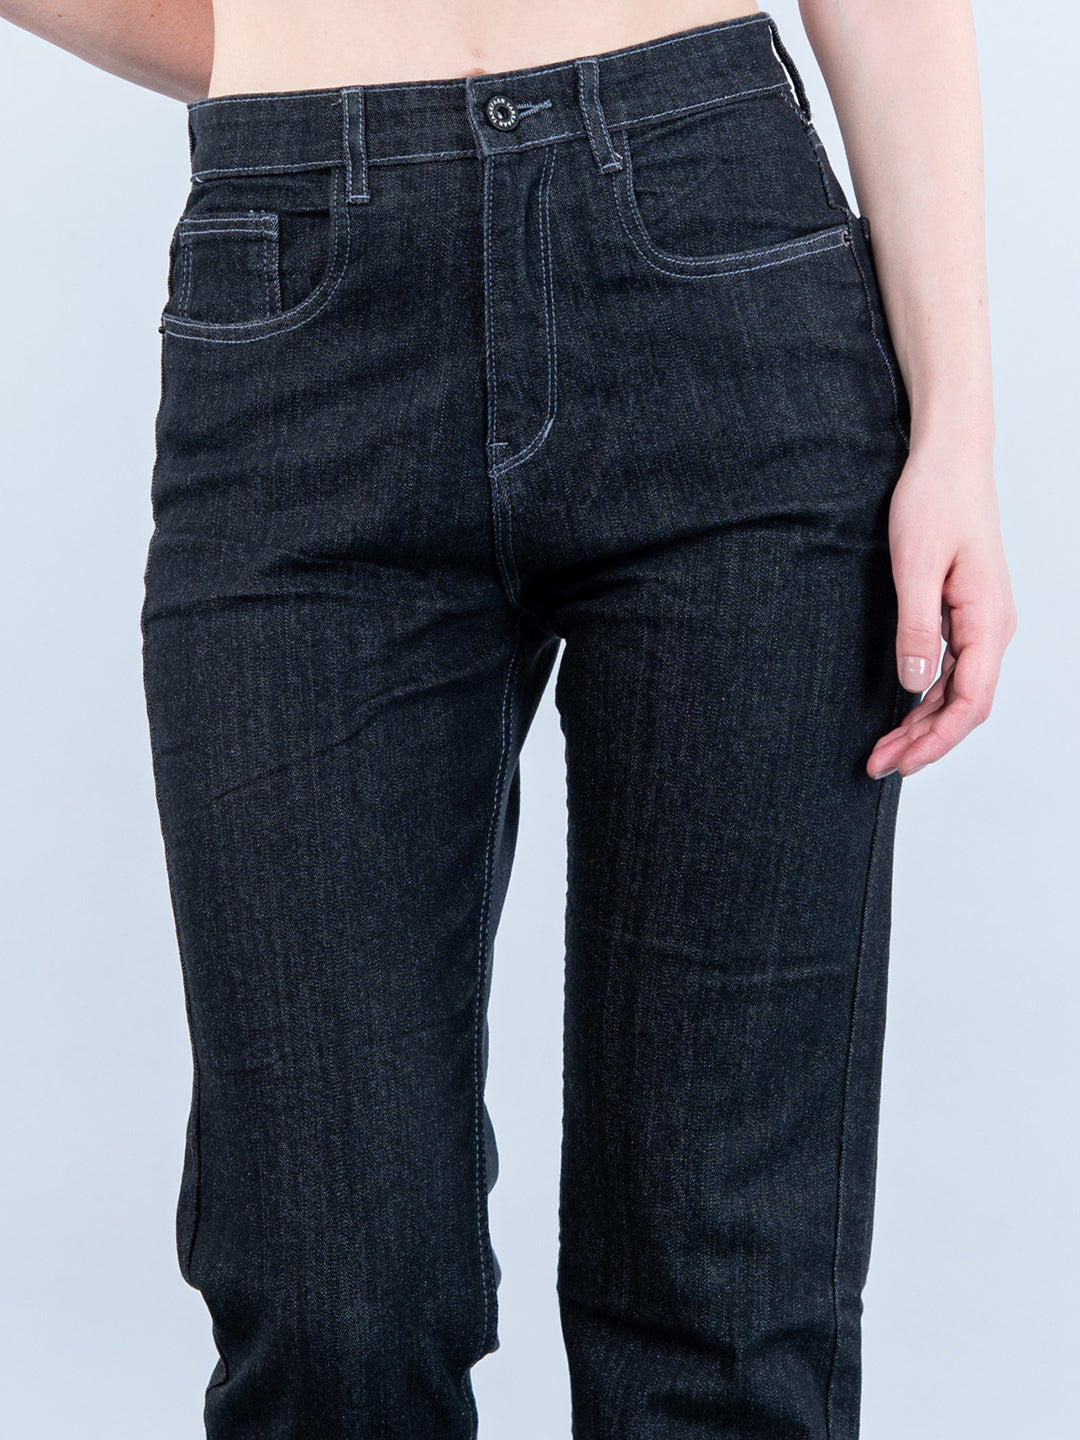 Contrast Back Detail Black Jeans